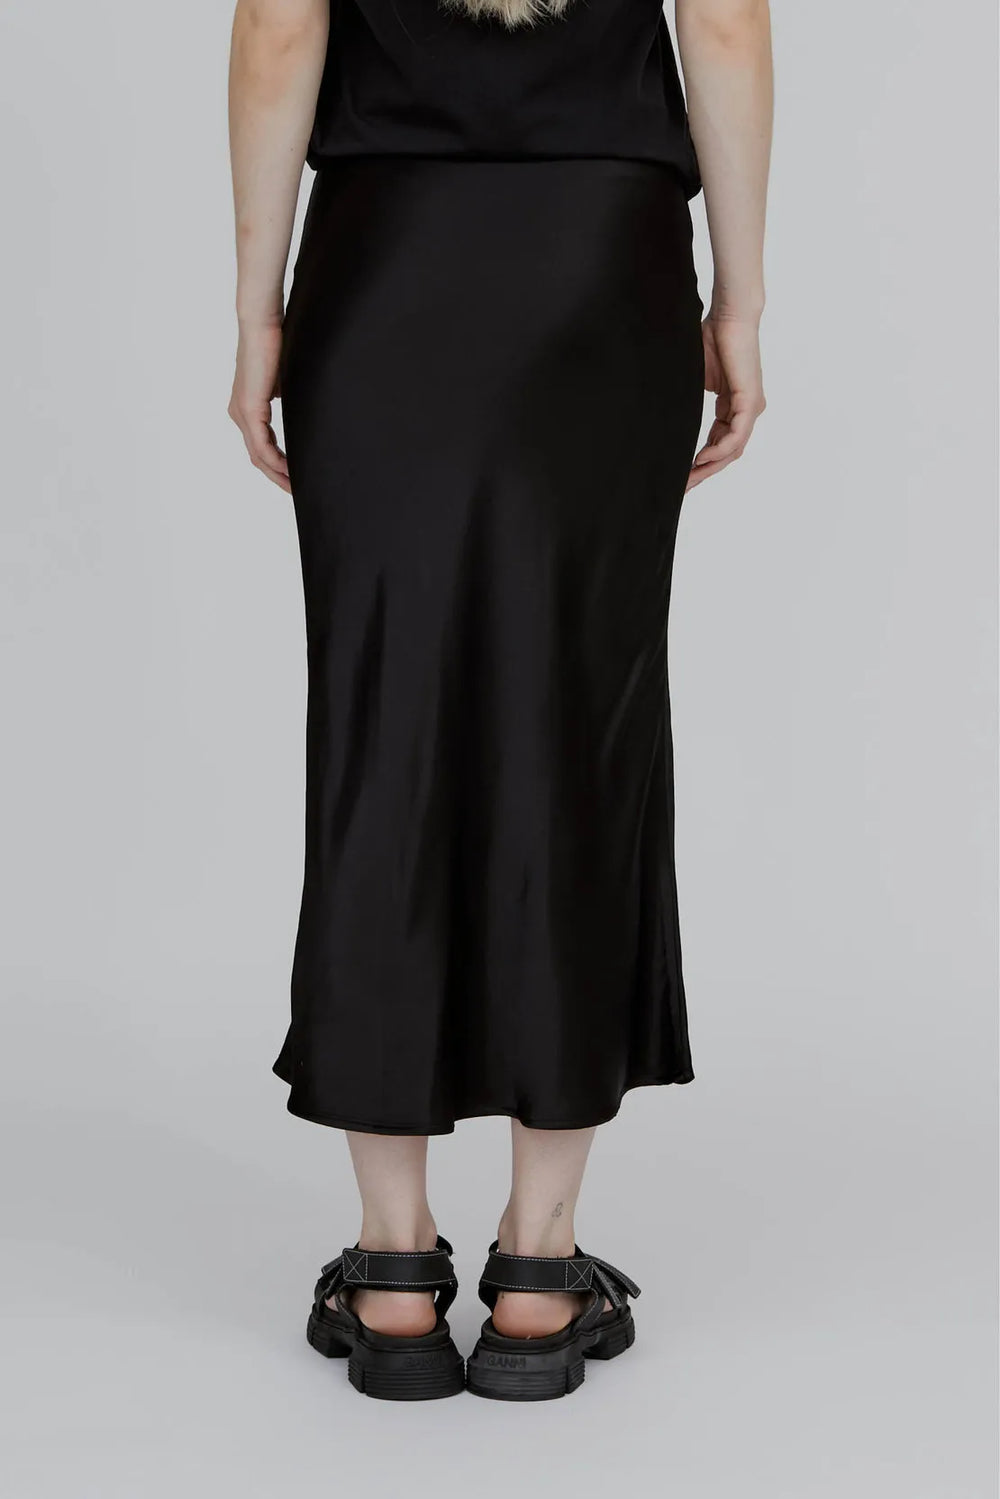 Nederdel til kvinder | Basic Apparel  Flora Skirt, black